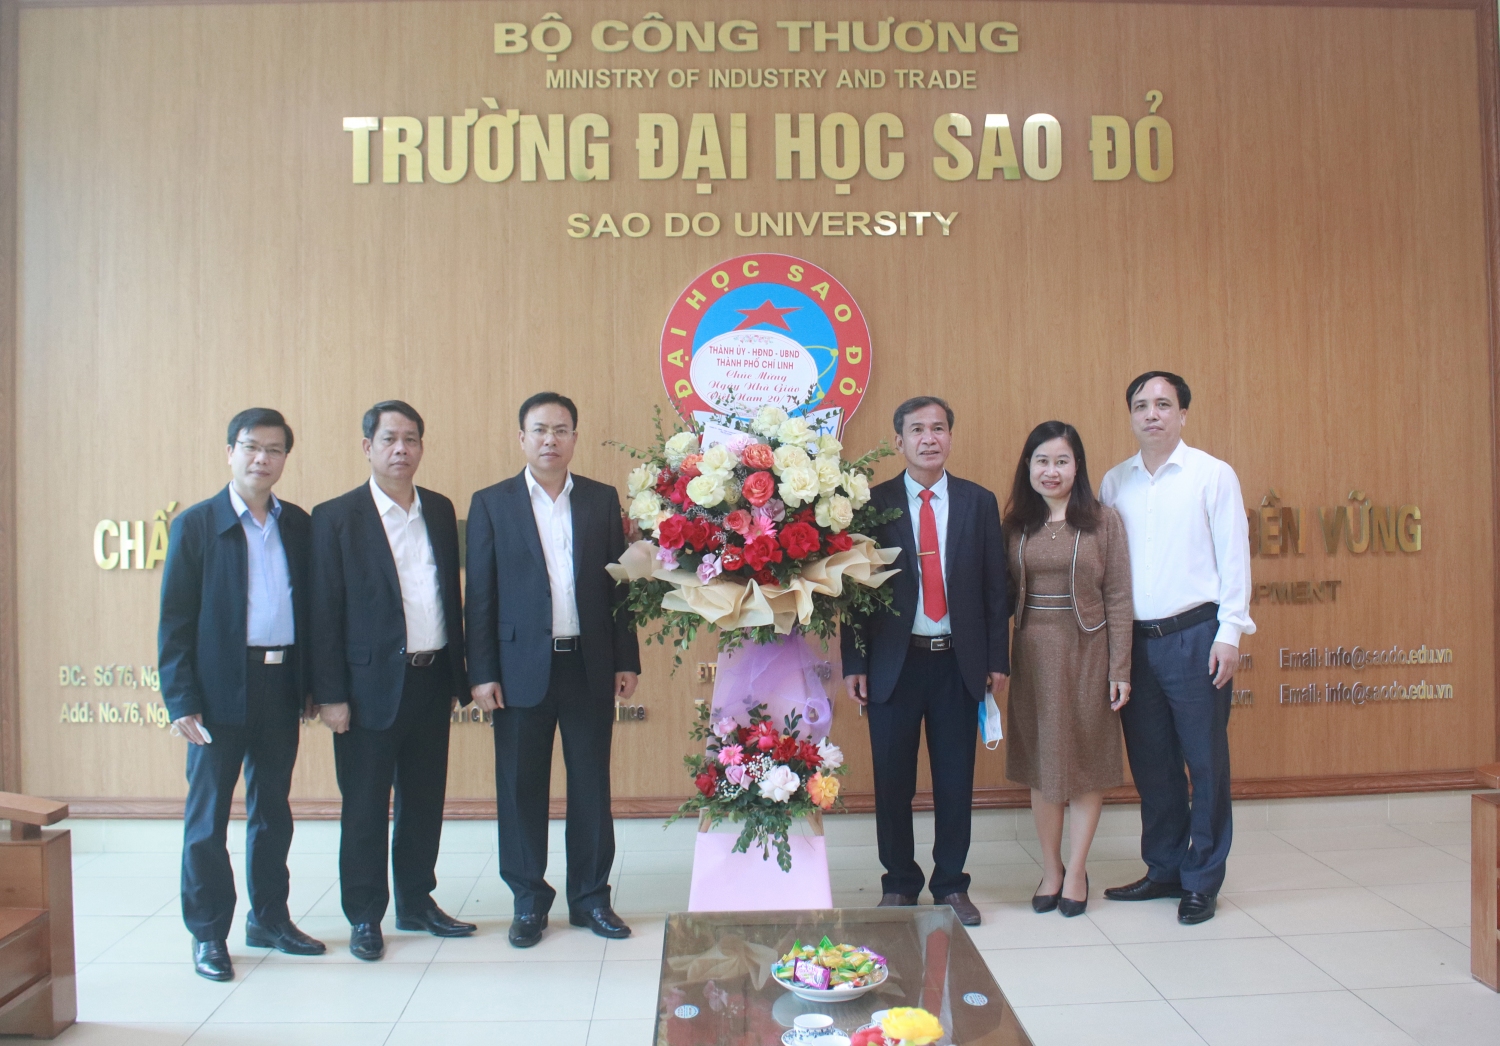 Đồng chí Hoàng Quốc Thưởng - Ủy viên Ban Thường vụ Tỉnh ủy, Bí thư Thành ủy Chí Linh tặng hoa chúc mừng nhà trường